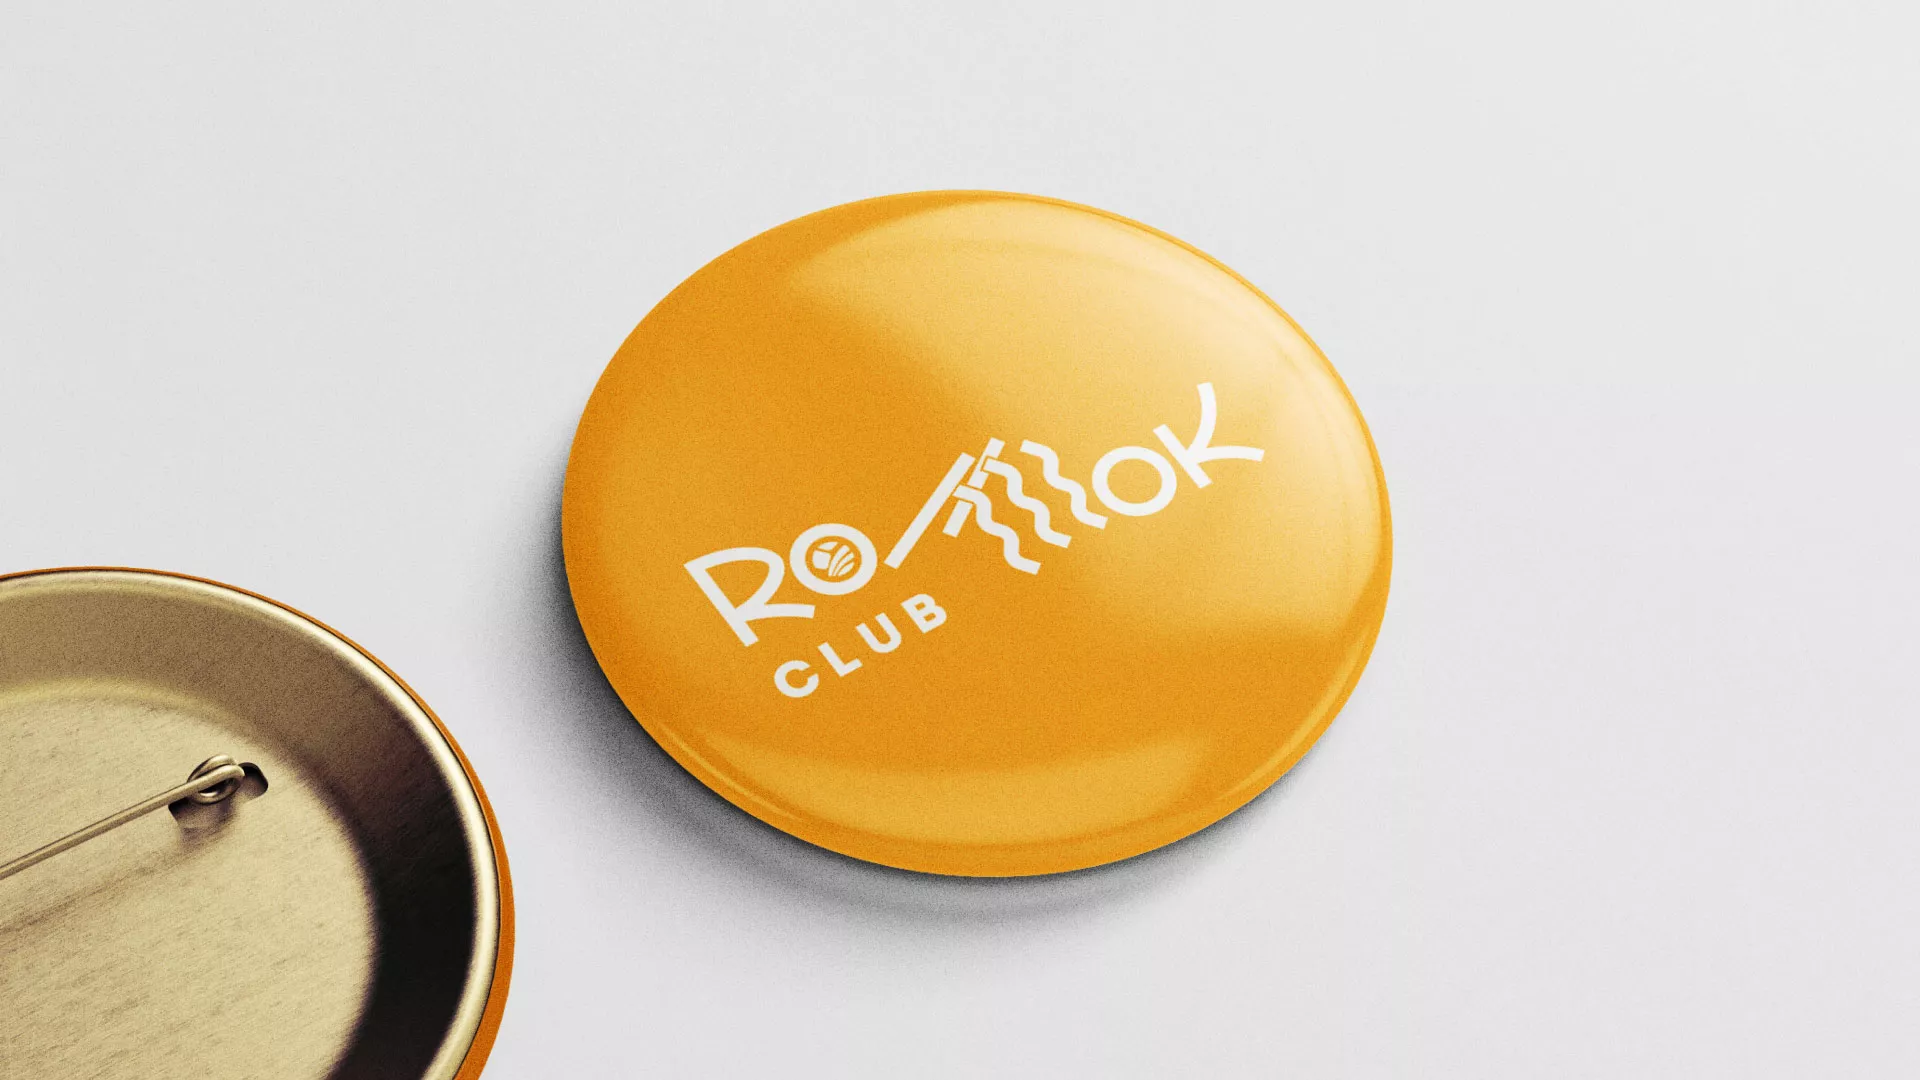 Создание логотипа суши-бара «Roll Wok Club» в Юбилейном